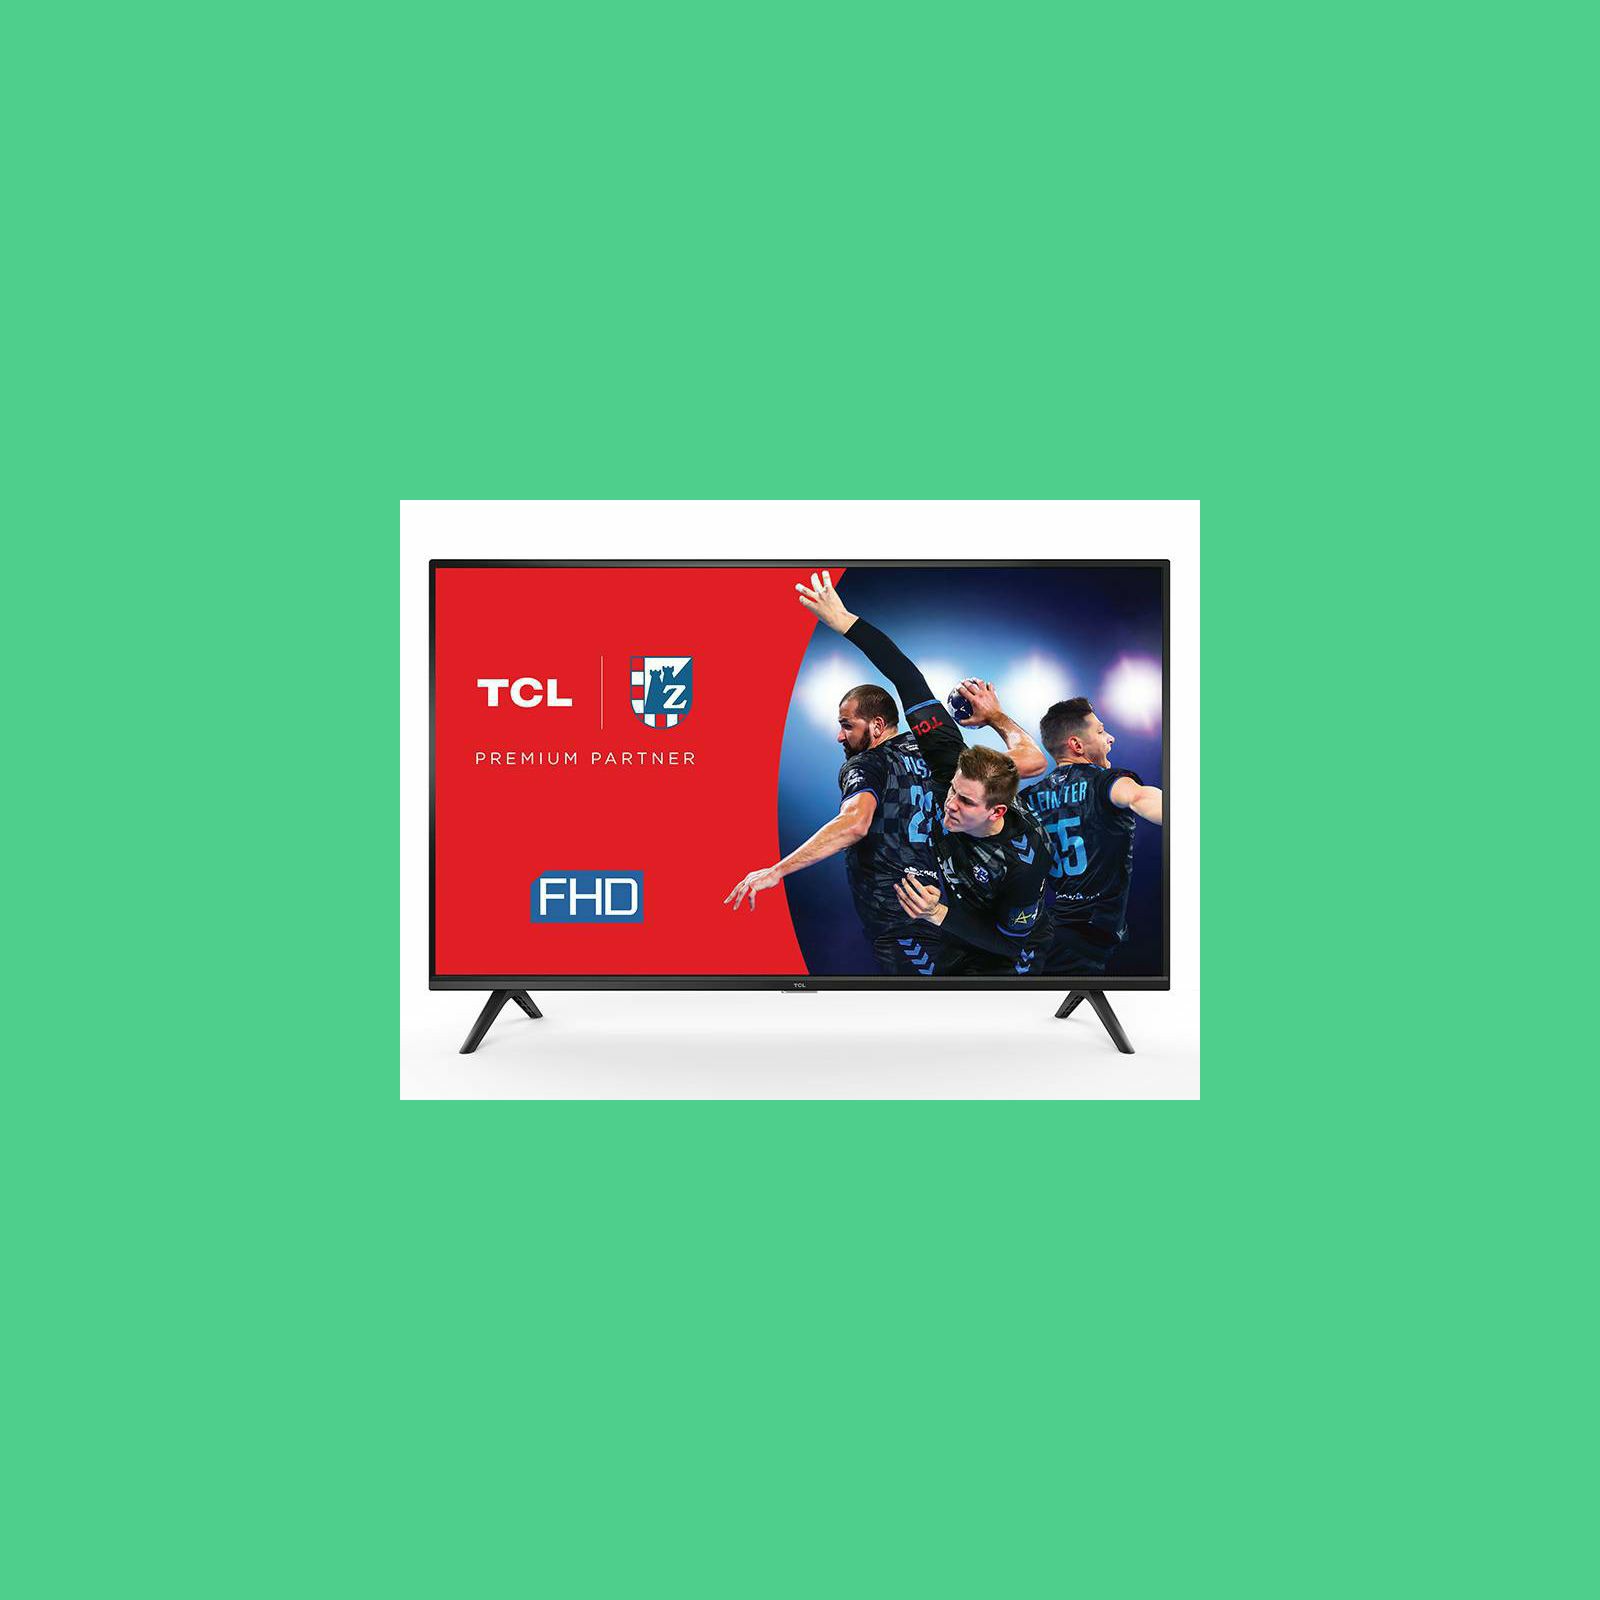 televizor-tcl-led-tv-40-40s5200-full-hd-android-tv-66154_44026.jpg